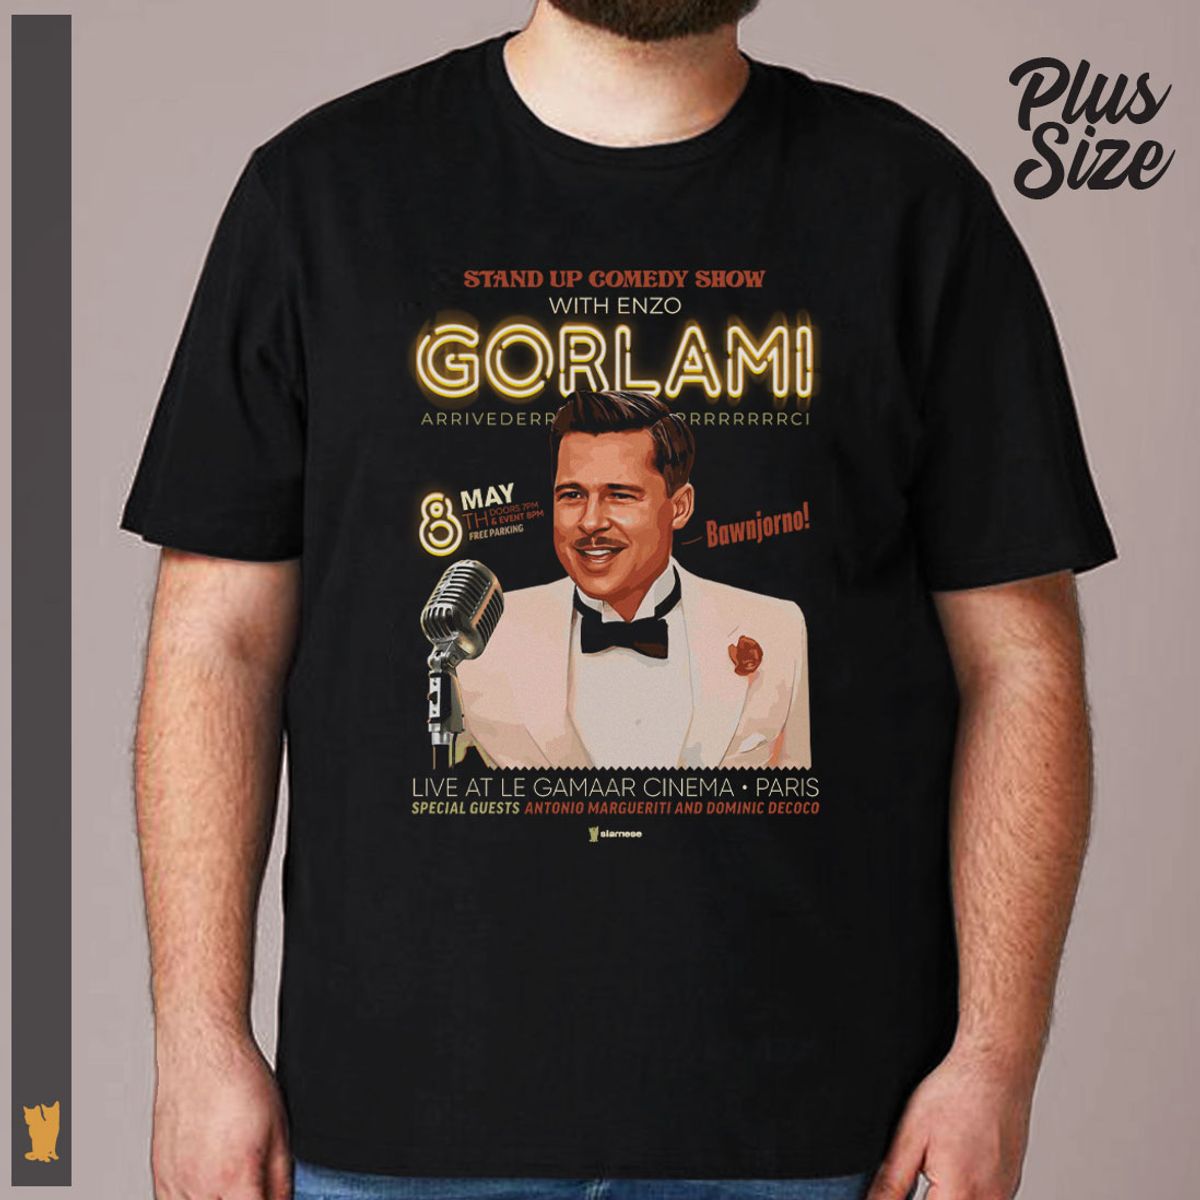 Nome do produto: Plus Size Gorlami - Bastardos Comedy Show